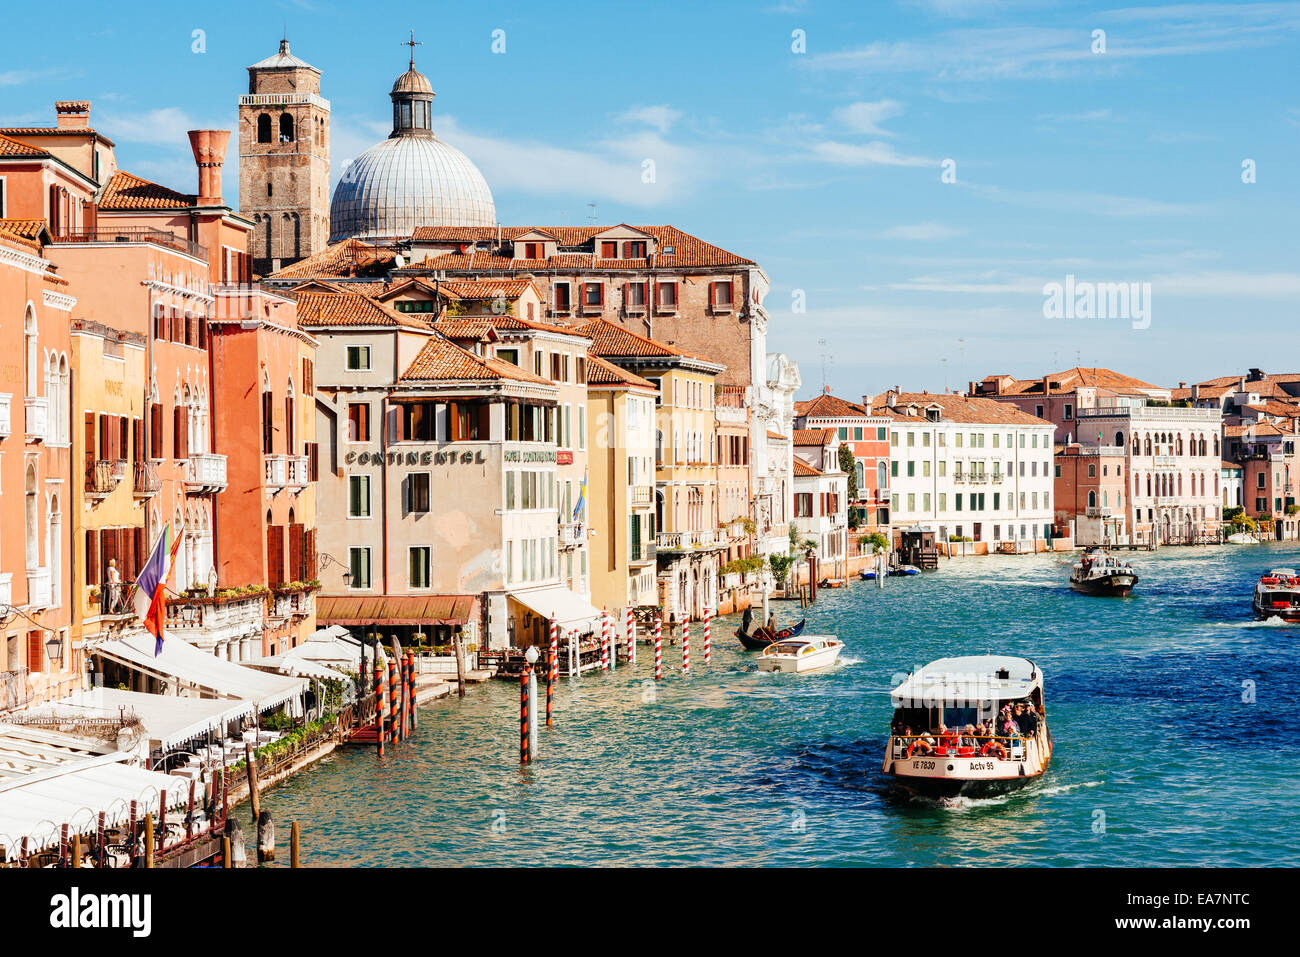 Venedig, Italien - 26. Oktober 2014: Kirche San Geremia und ACTV Vaporetto im Canal Grande. Vaporetto (Wasserbus) könnte übersetzt werden Stockfoto